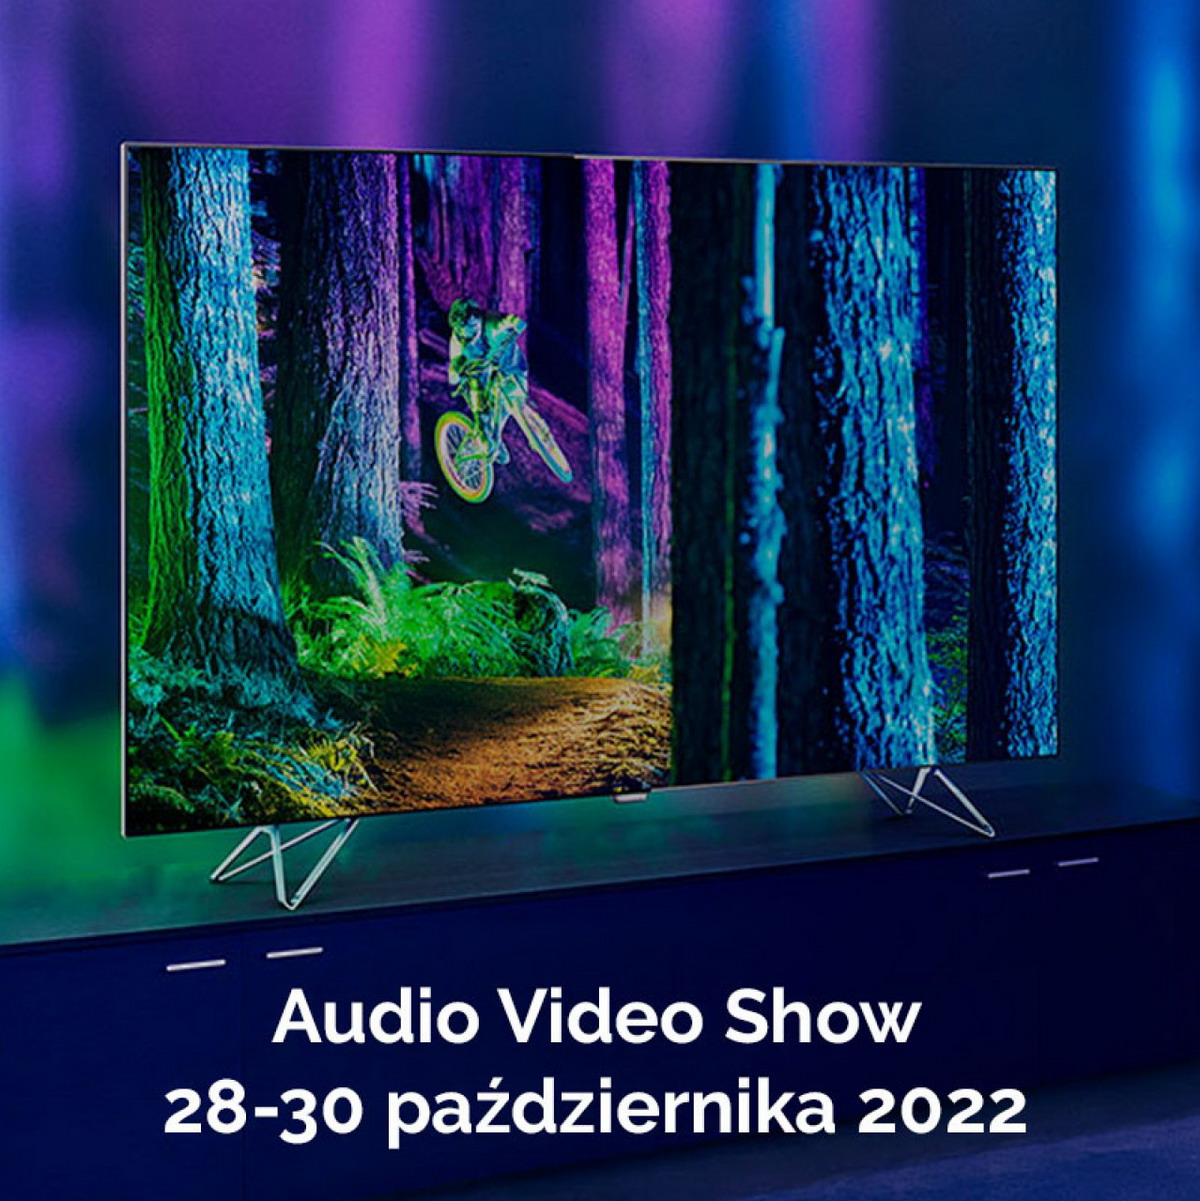 Audio Video Show 2022 – w tym roku w październiku